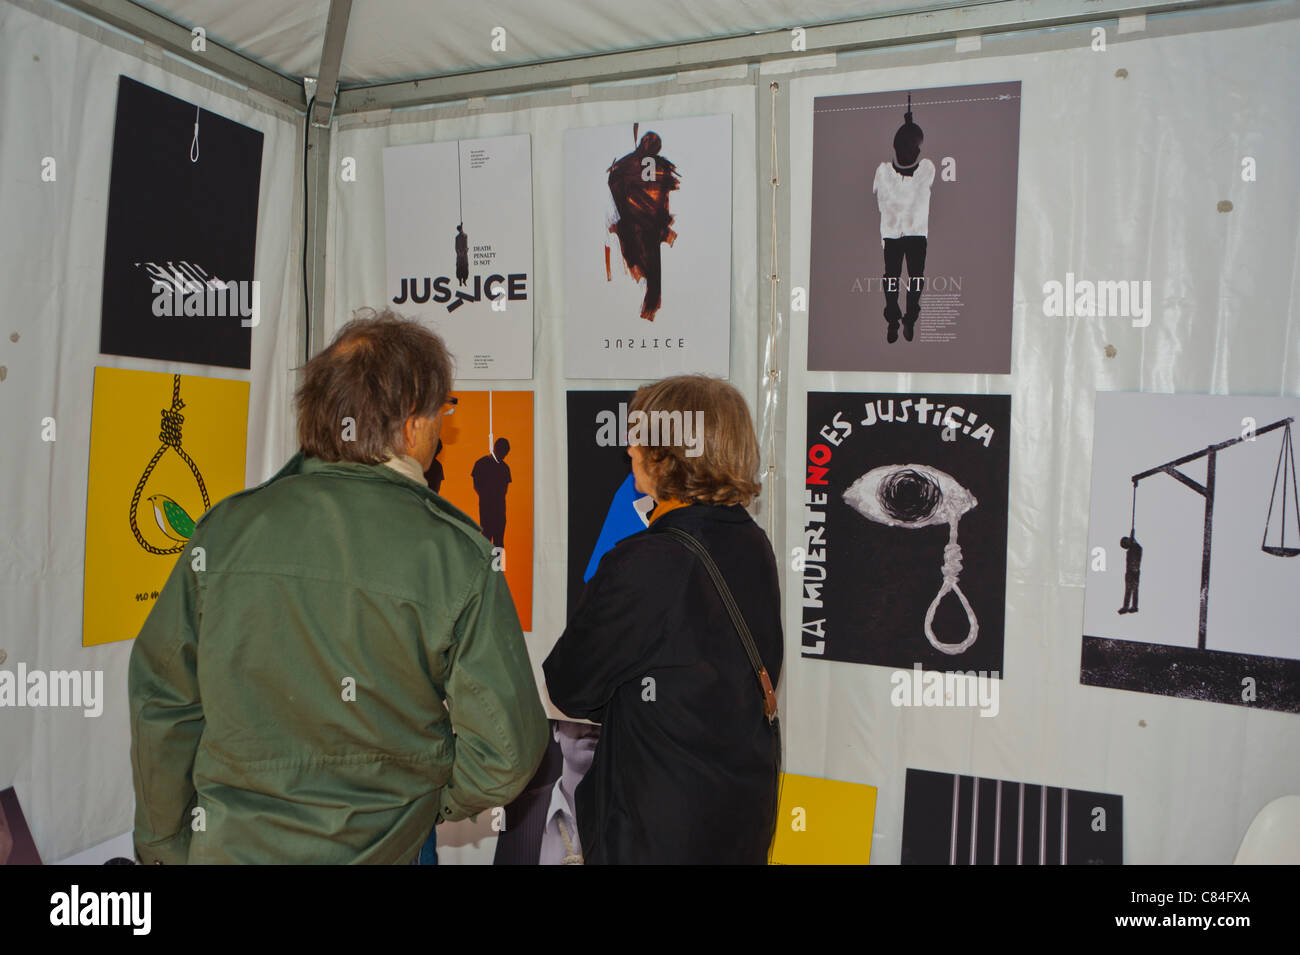 Art de protestation , Journée mondiale contre la peine de mort: Le Rallye pour l'abolition, Pa-ris, France, personnes regardant les affiches de campagne sur le mur d'exposition dans la Galerie, art d'activisme Banque D'Images